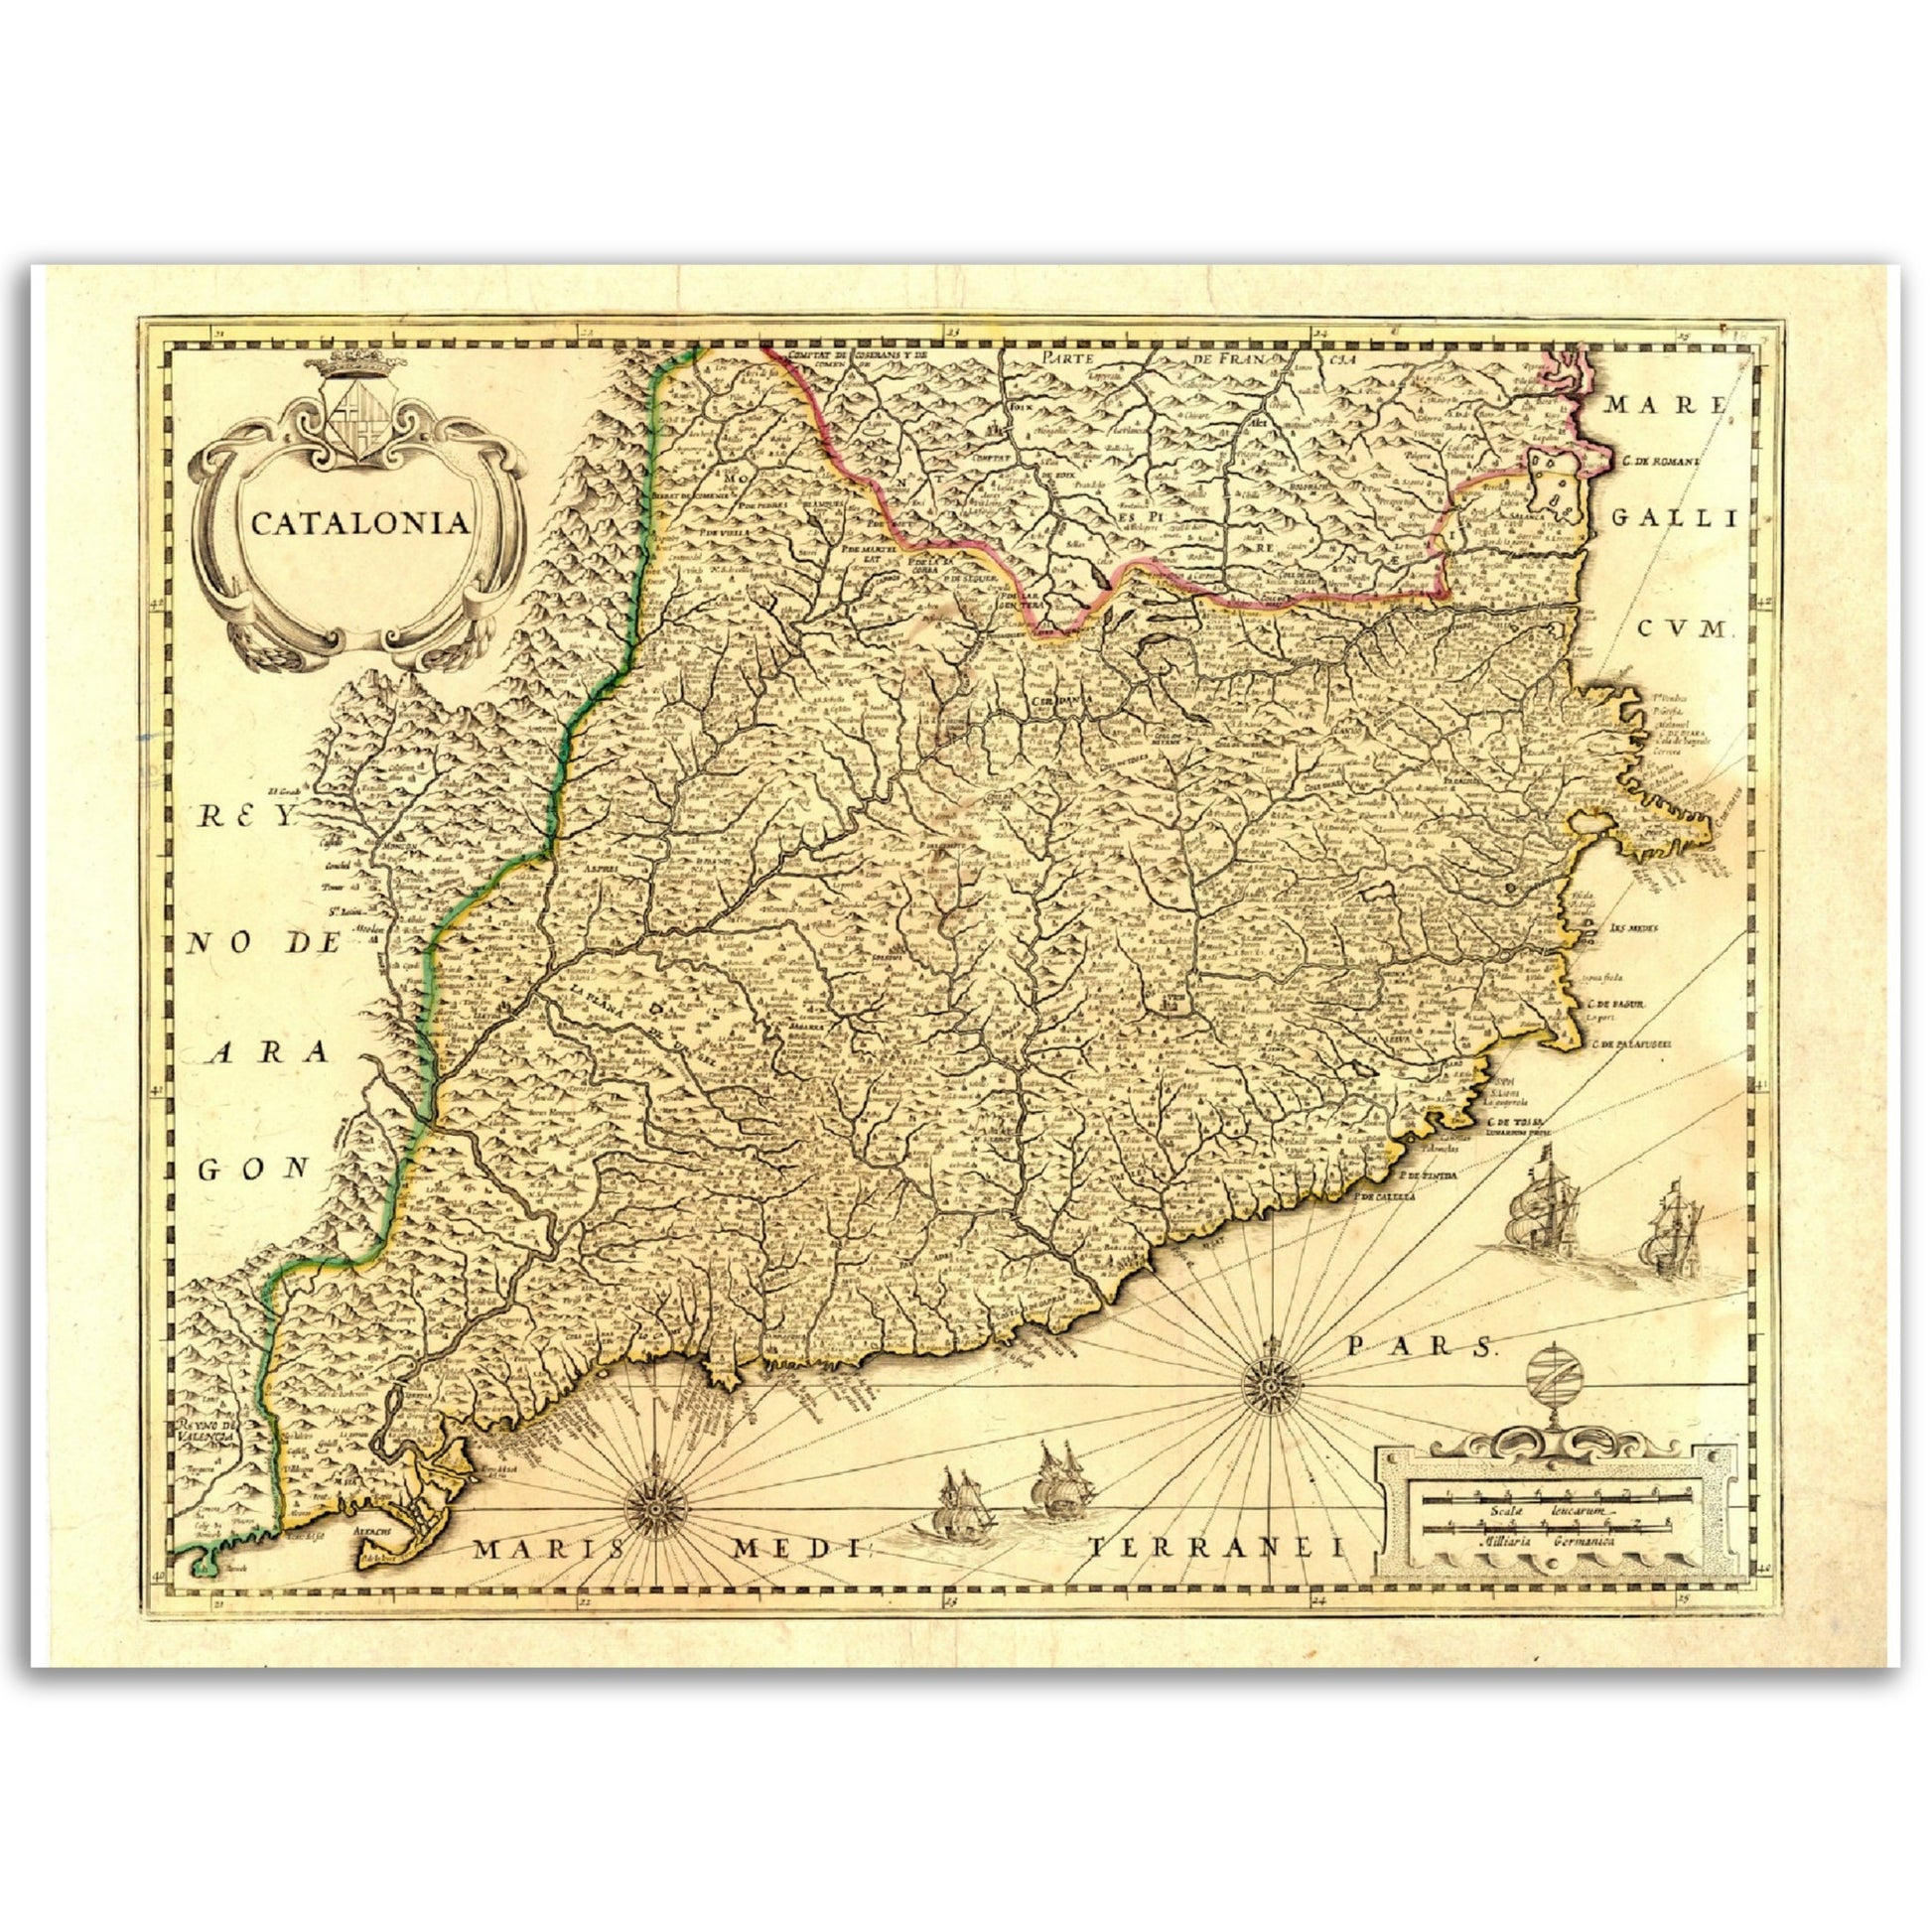 Vintage Catalonia Map 1638 Reprint on Premium Matte Paper - Posterify